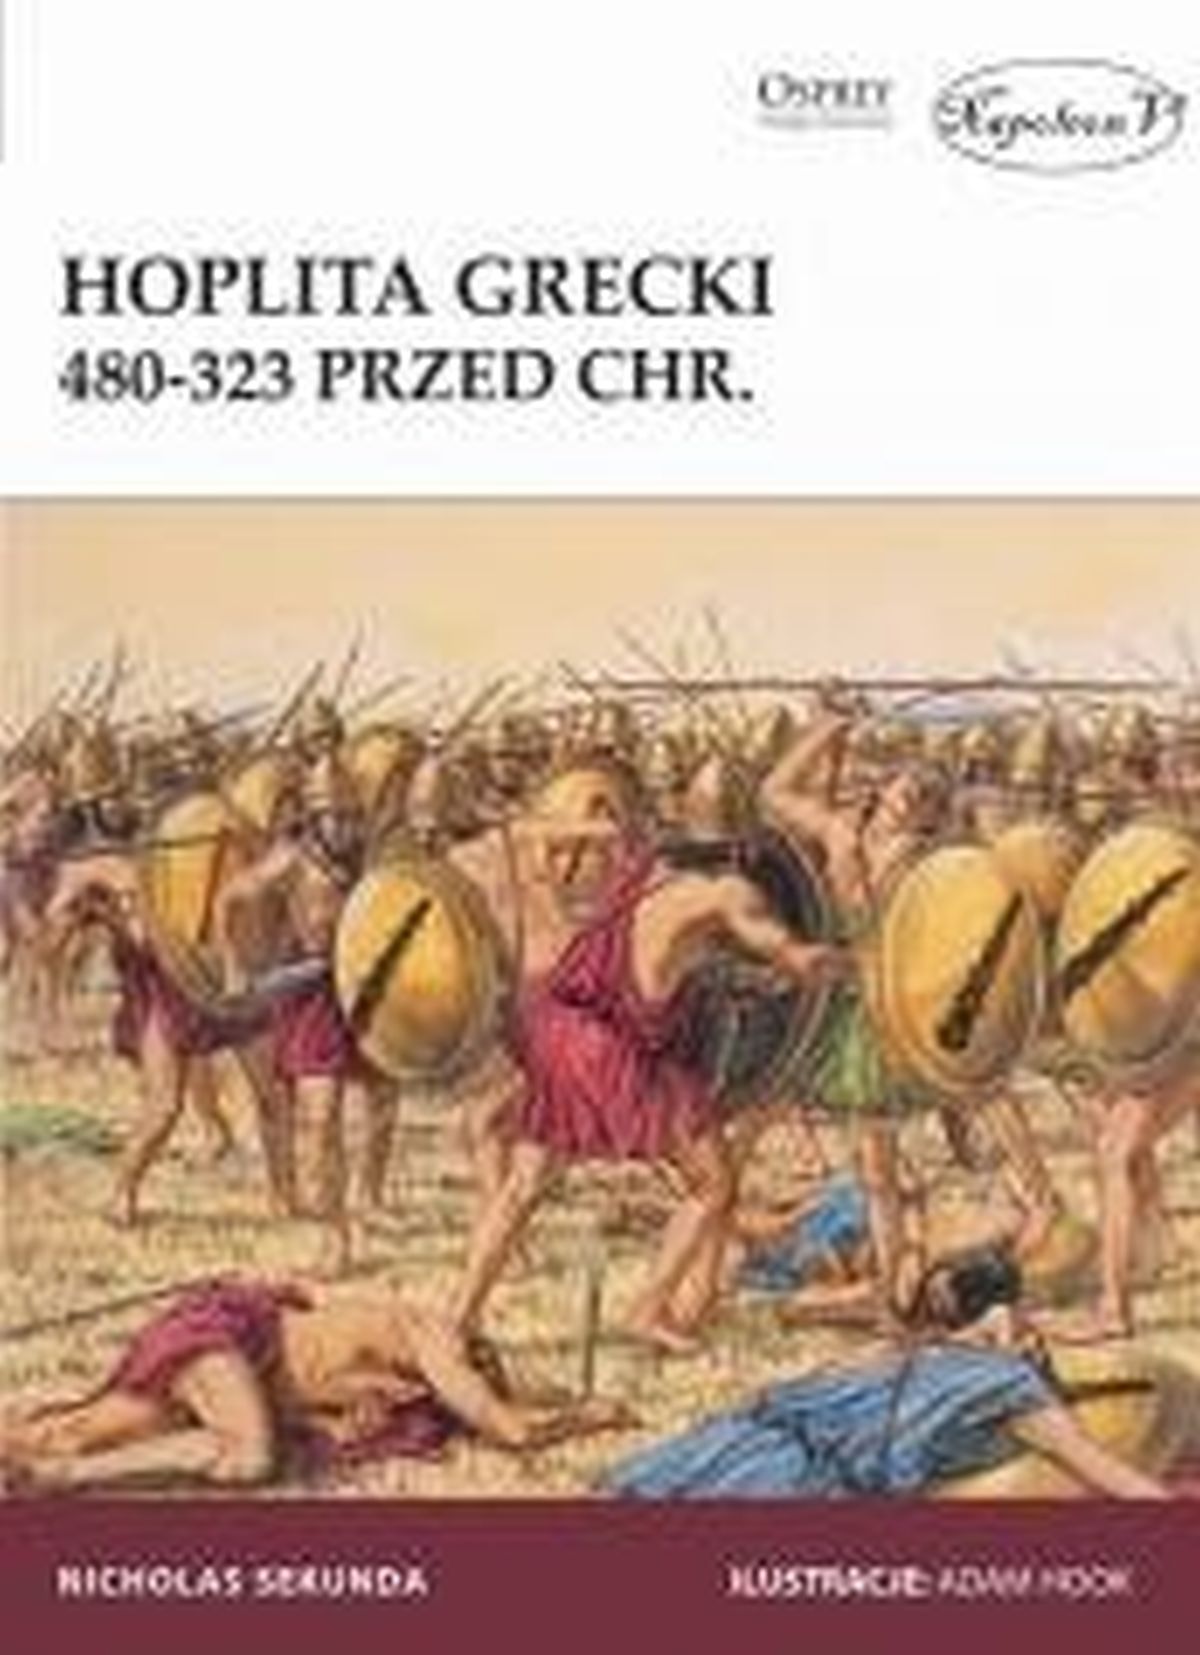 Hoplita grecki 480-323 przed chr.